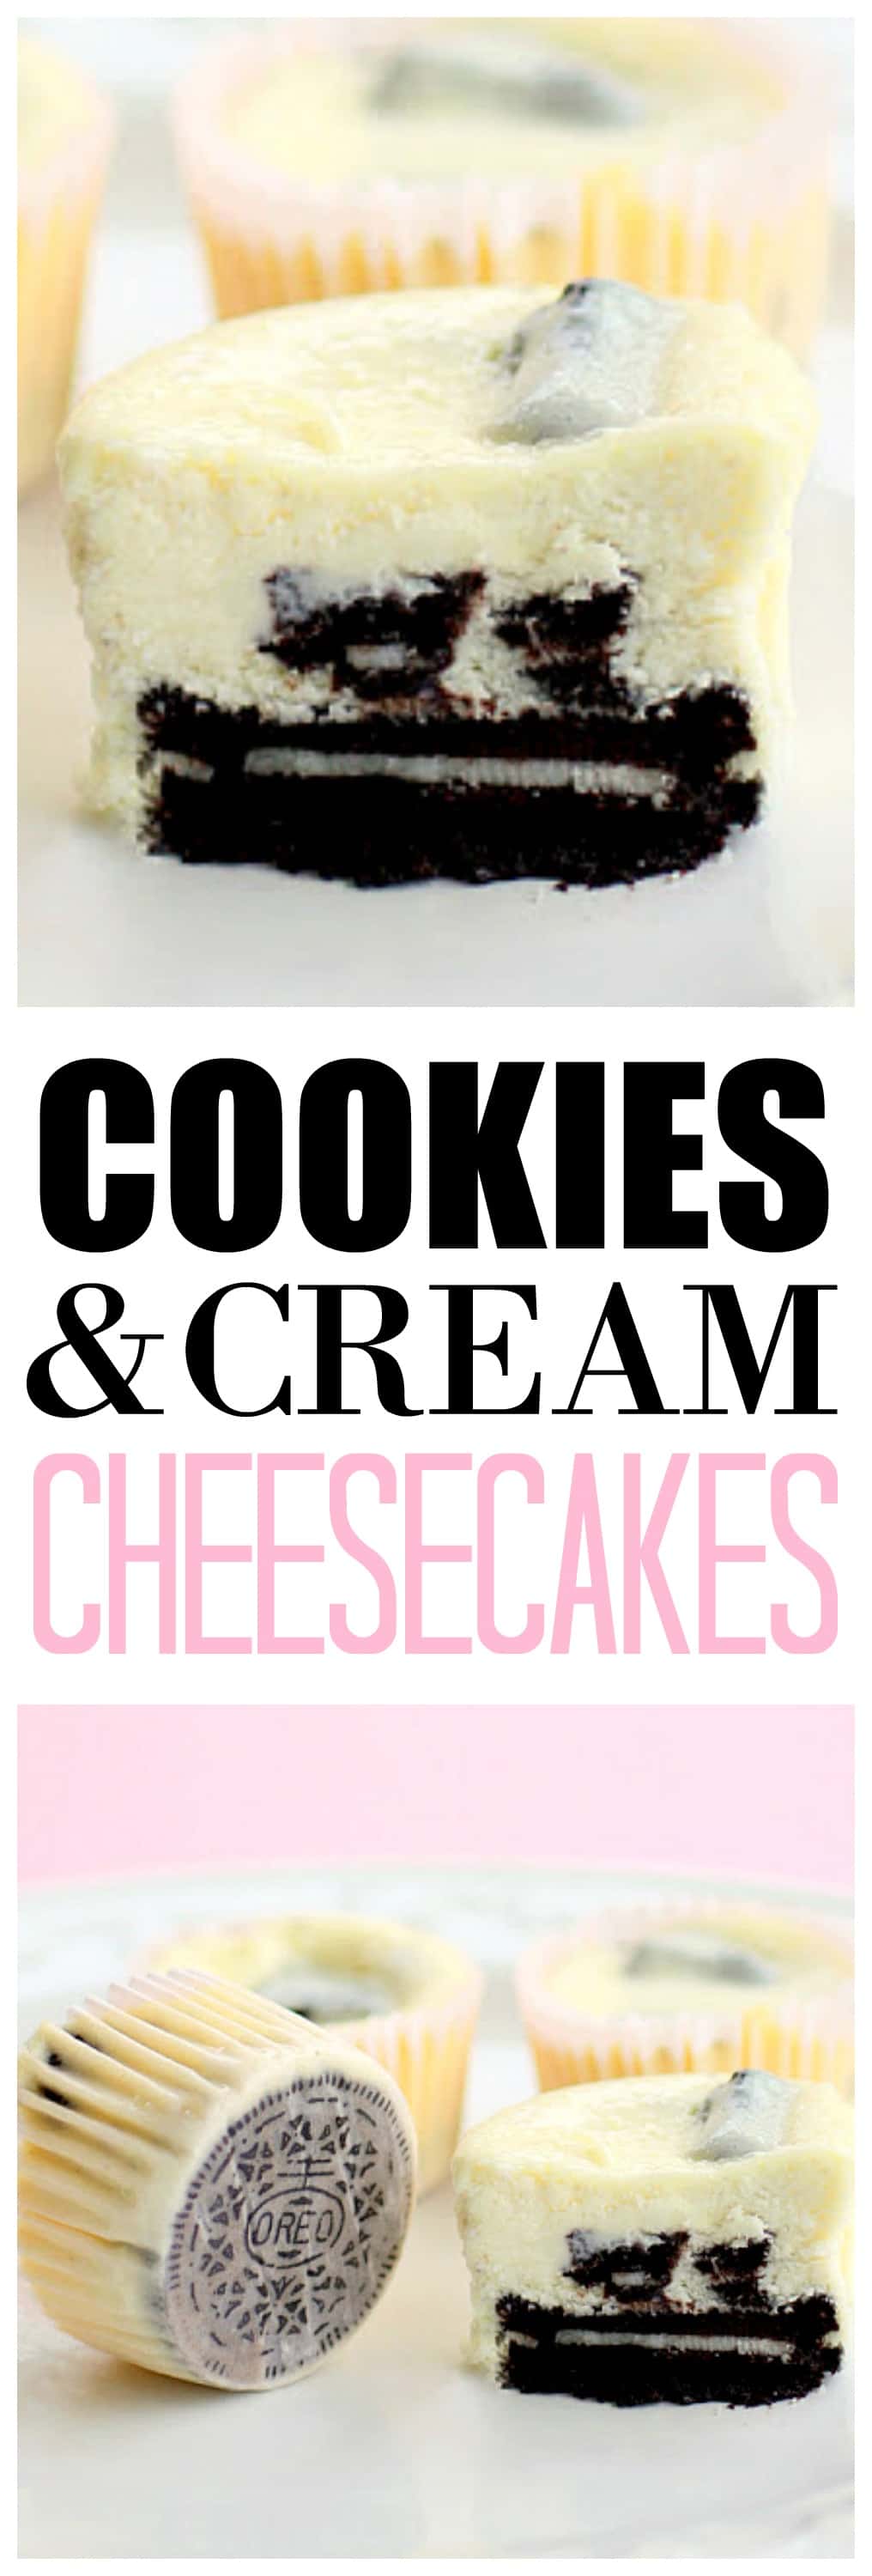 Os Cookies and Cream Cheesecakes não poderiam ser mais fáceis.  Cada um tem um Oreo completo como crosta!  #oreo #cheesecake #sobremesa #receita